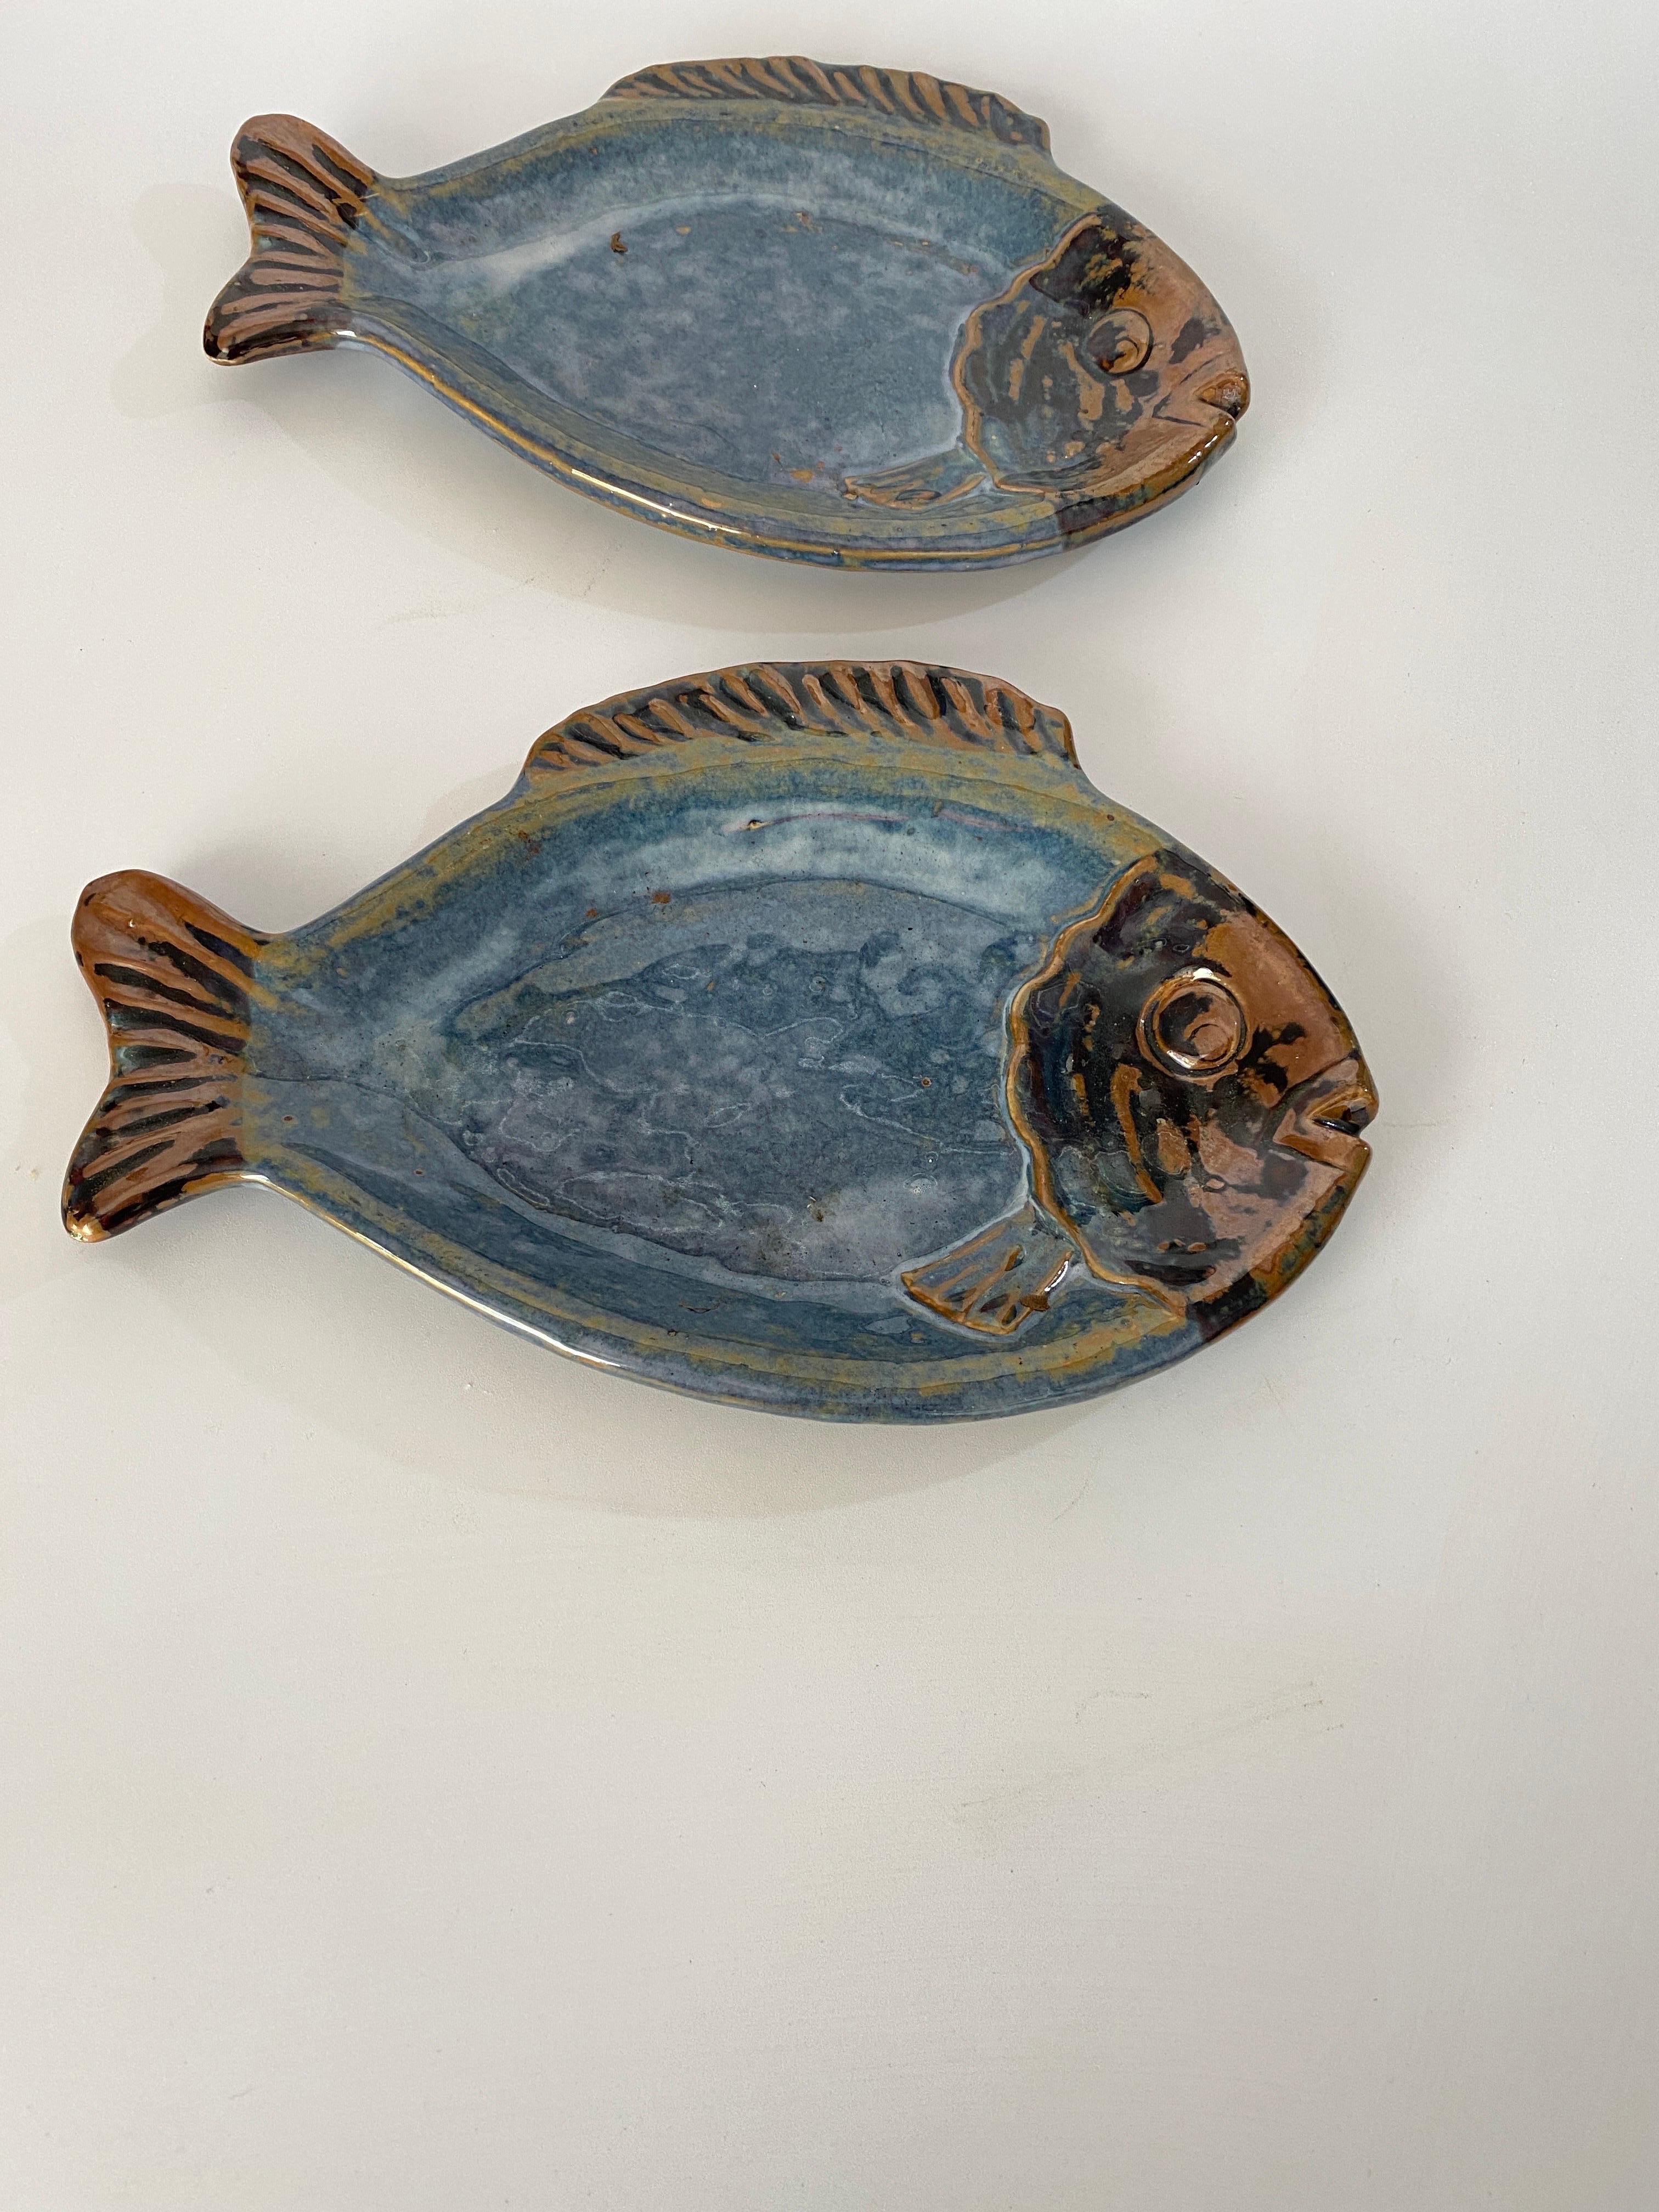 Paar kleine Keramikschalen. Die Farbe ist blau und geht ins Graue über. Sie können als Teller oder als Videopoche verwendet werden. Sie wurden in den 1960er Jahren in Frankreich hergestellt und sind in gutem Zustand.